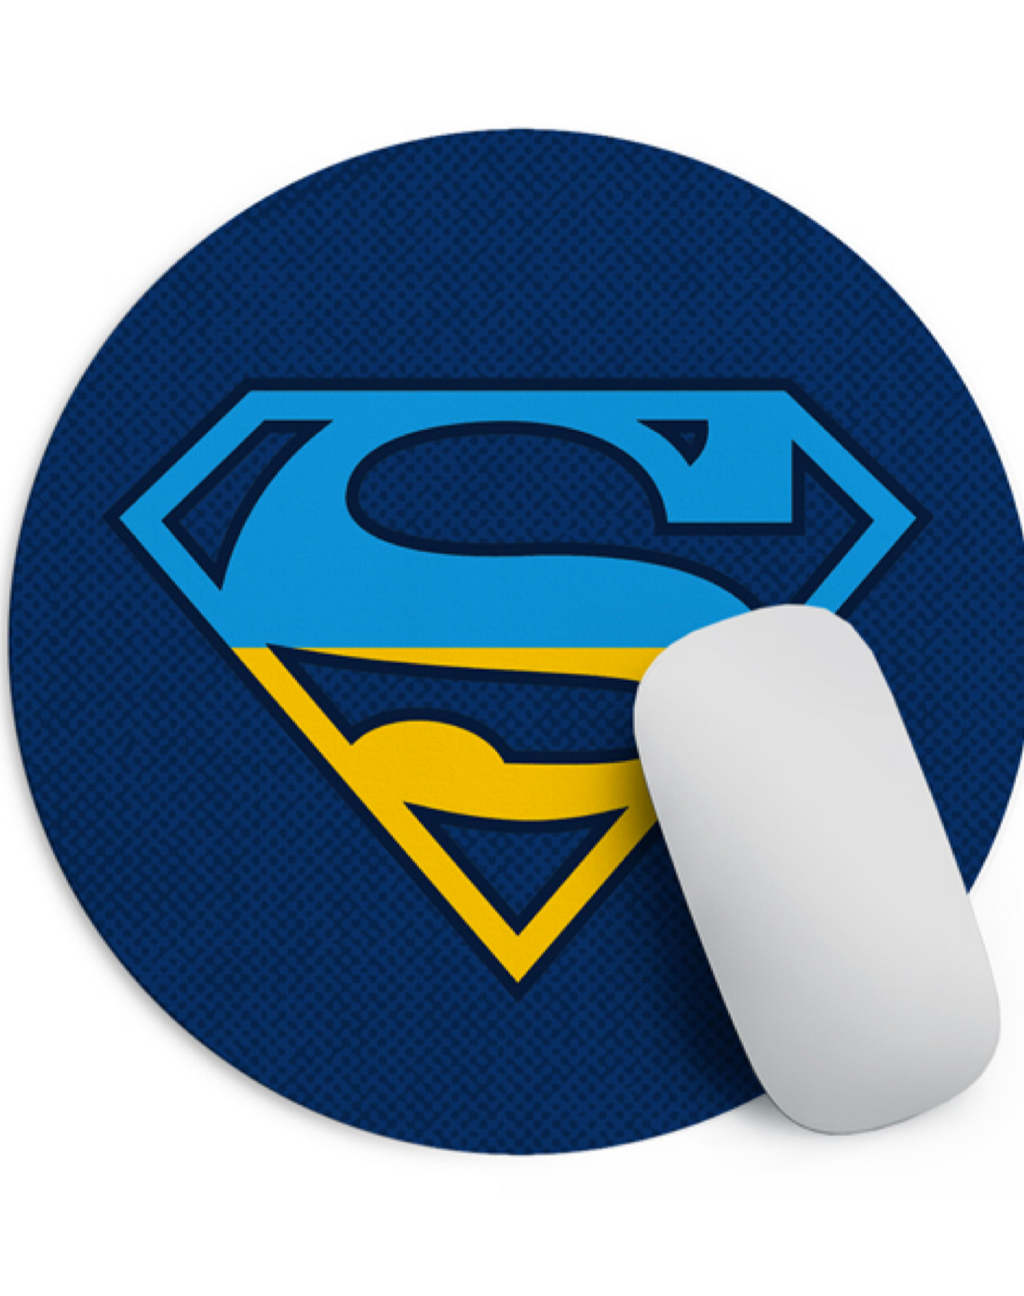 Round Mouse Pad “Ukrainian SuperHero”